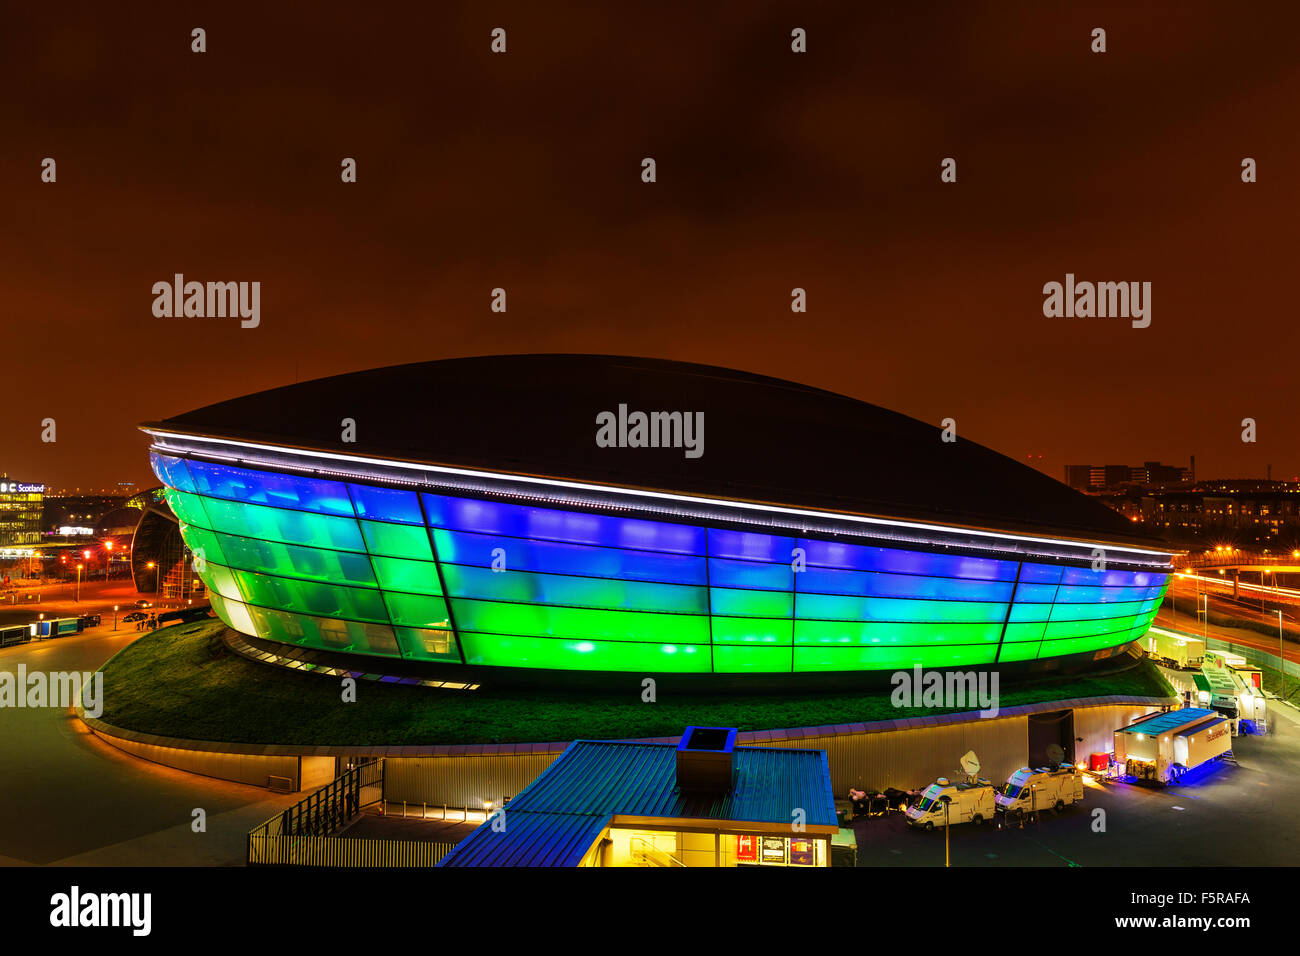 GLASGOW, Ecosse. 27 octobre 2015 : La SSC Hydro Stadium éclairé la nuit sur les rives de la Clyde, Glasgow, Ecosse Banque D'Images